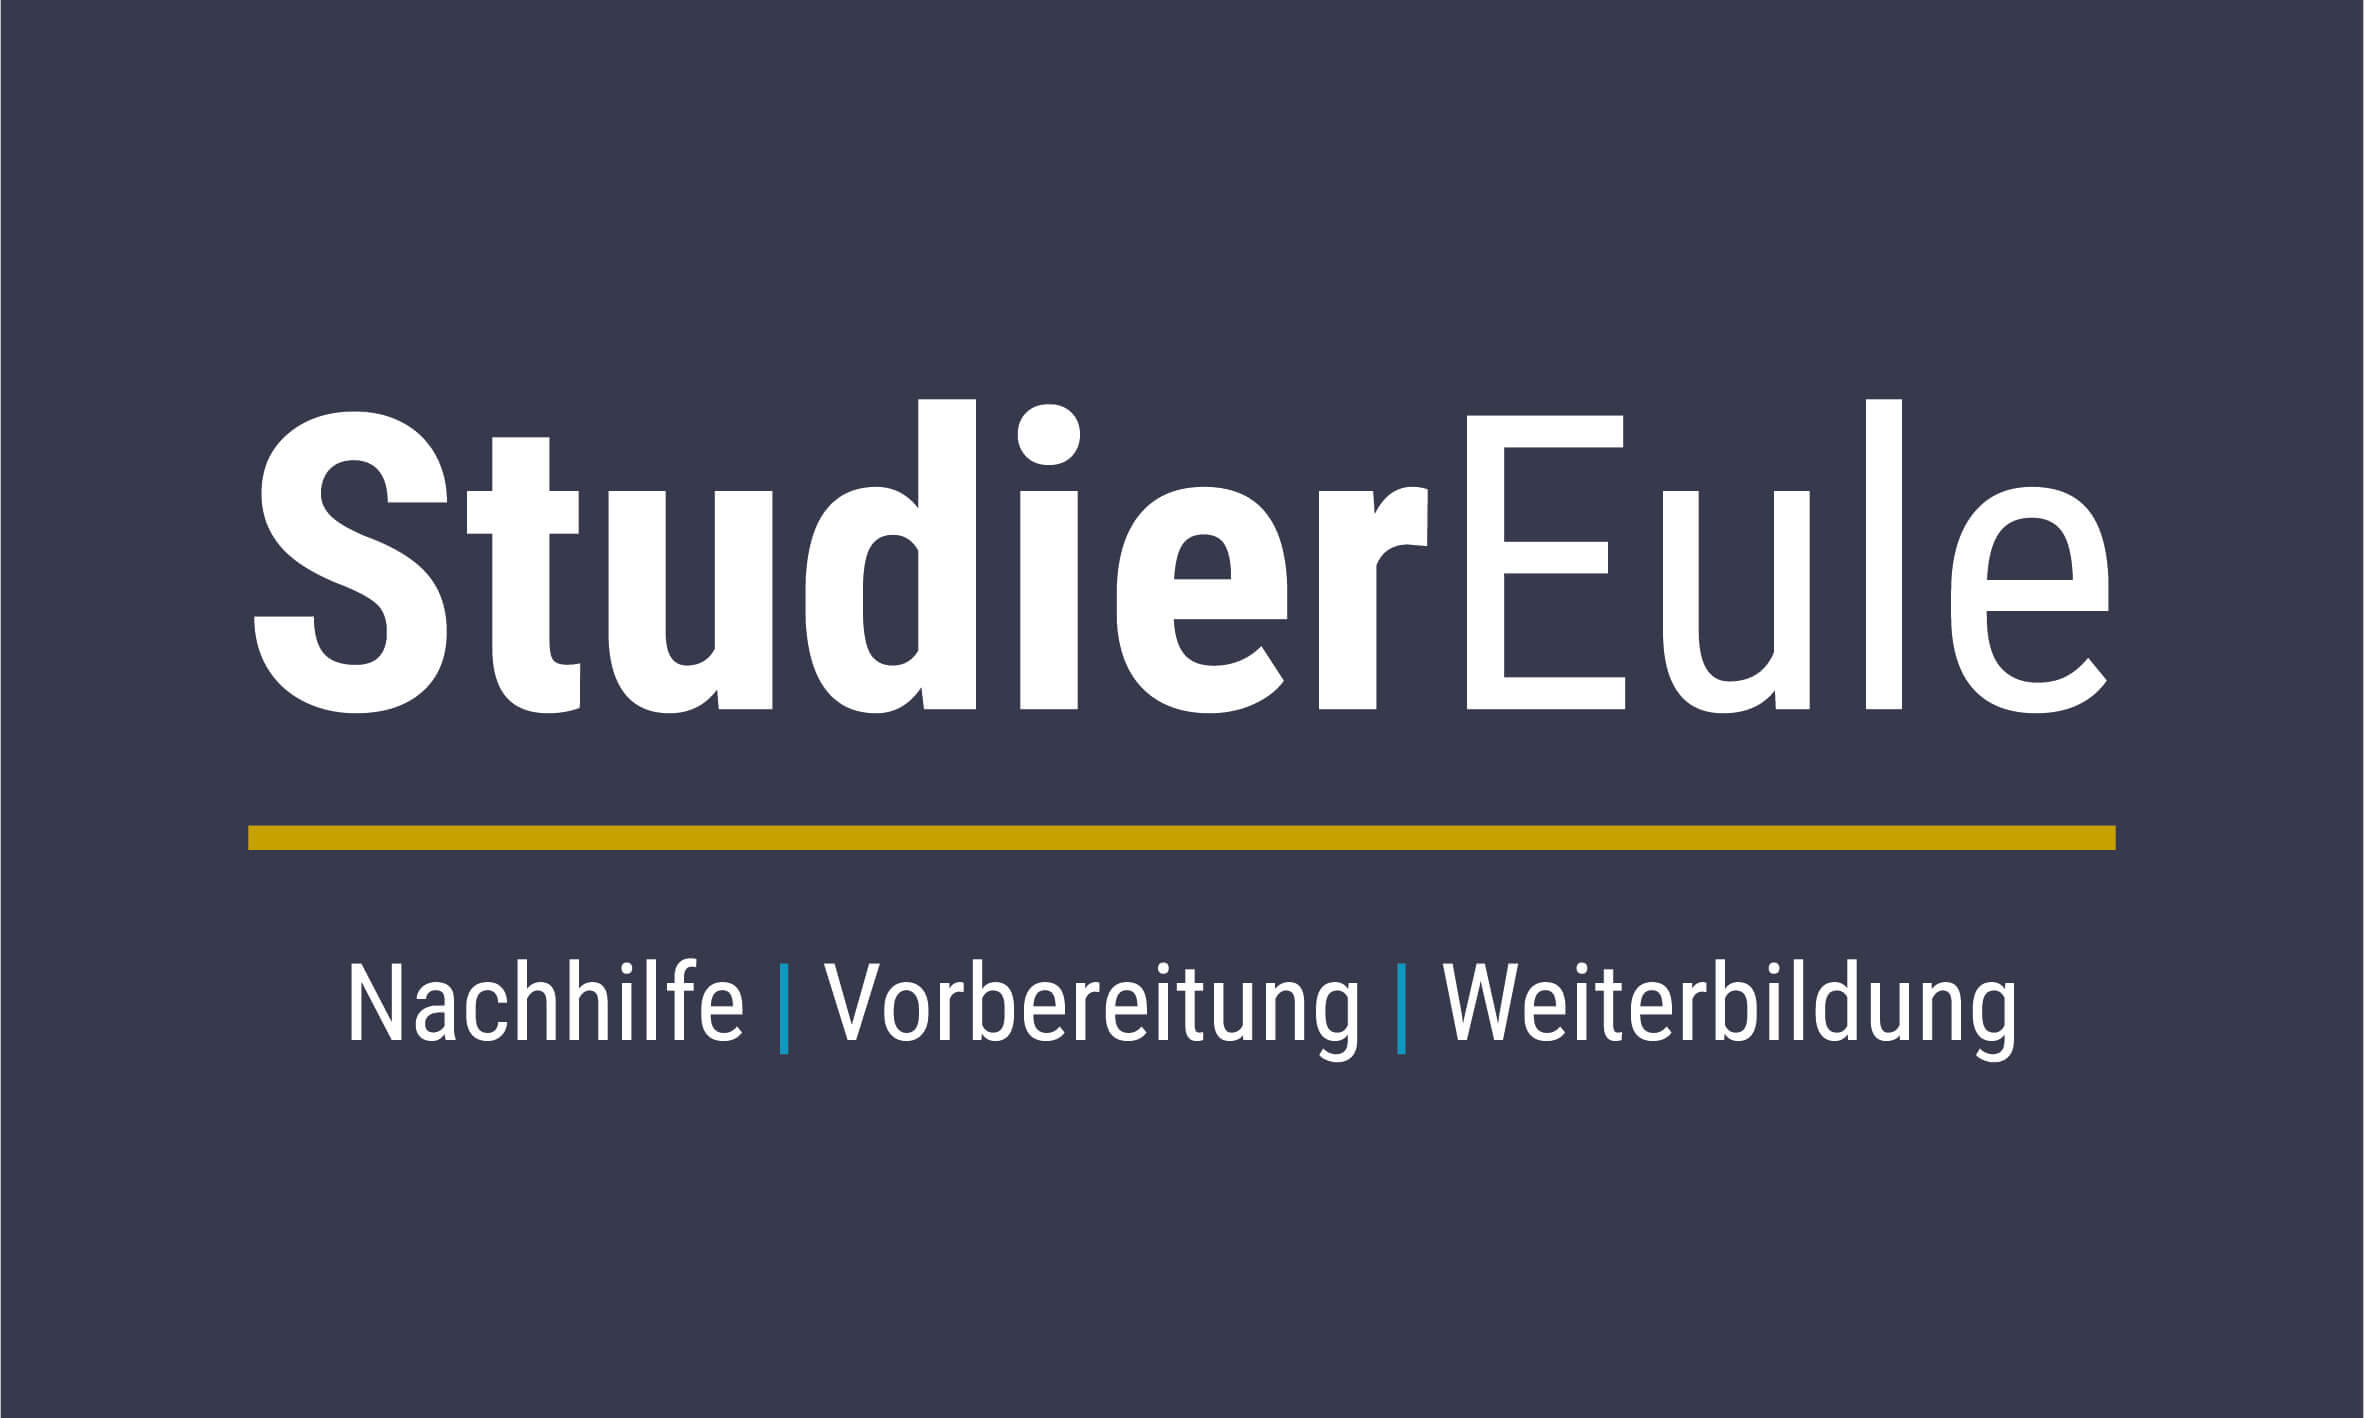 StudierEule | Nachhilfe in Wiener Neustadt  | Alle Fächer!